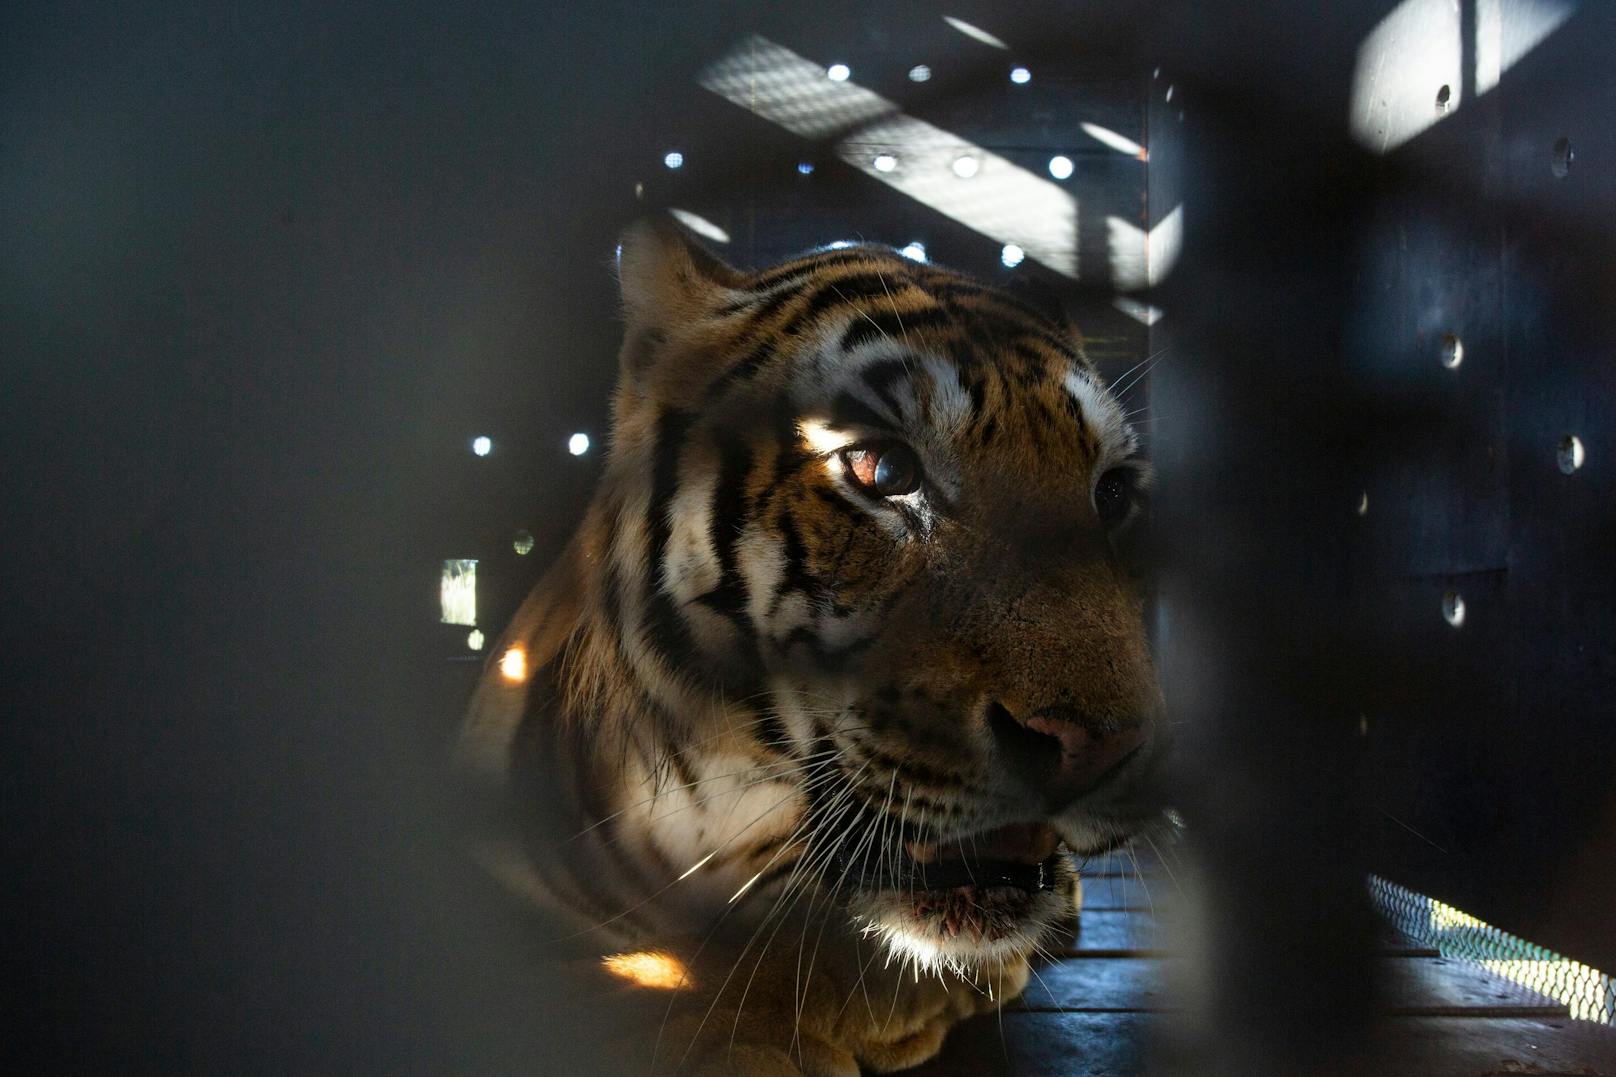 Indem die Tiger dadurch freiwillig in die Transportboxen stiegen, konnte der potenzielle Risikofaktor einer Narkose vermieden werden.